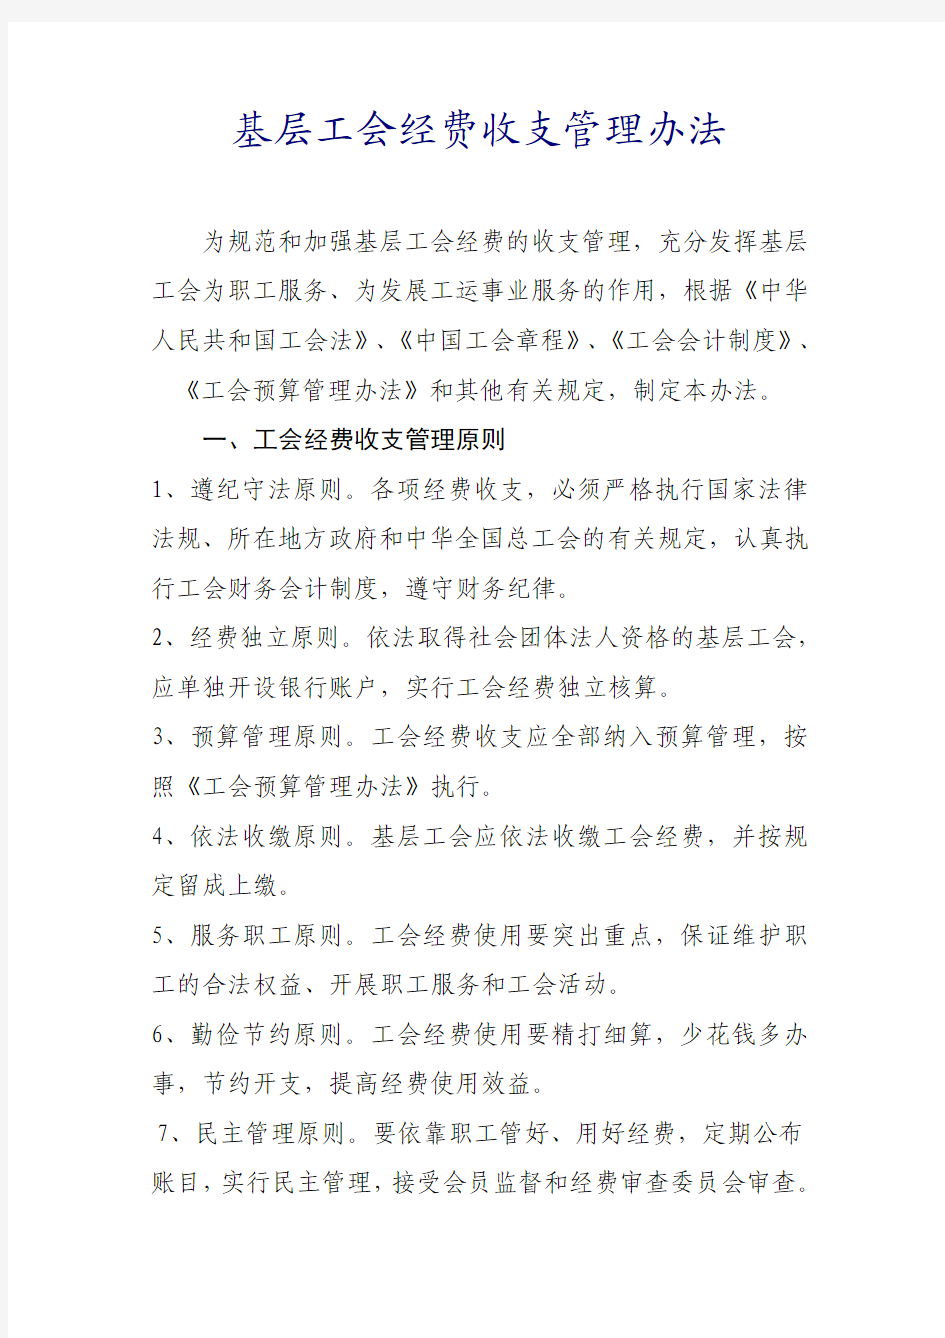 中华全国总工会关于印发《基层工会经费收支管理办法》的通知